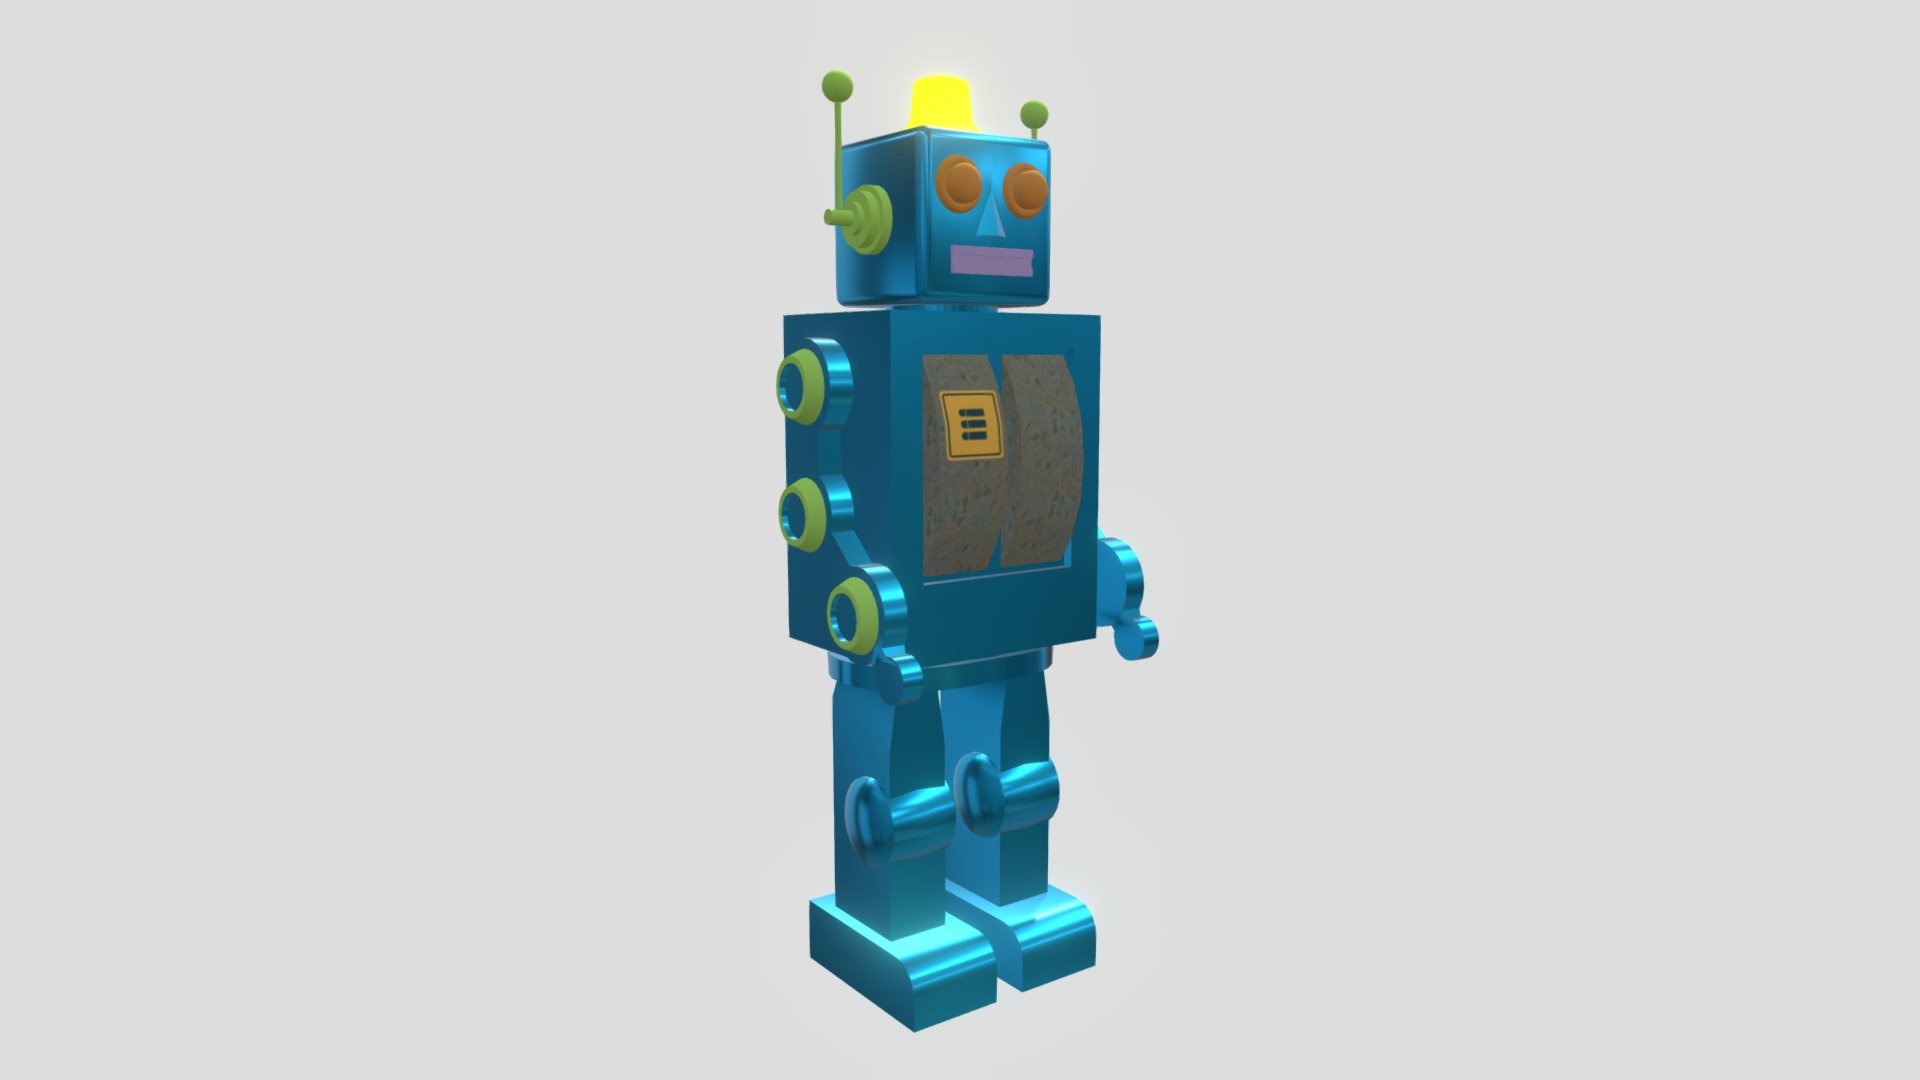 robot1 - 3D model by siiriinno [9d83661] - Sketchfab